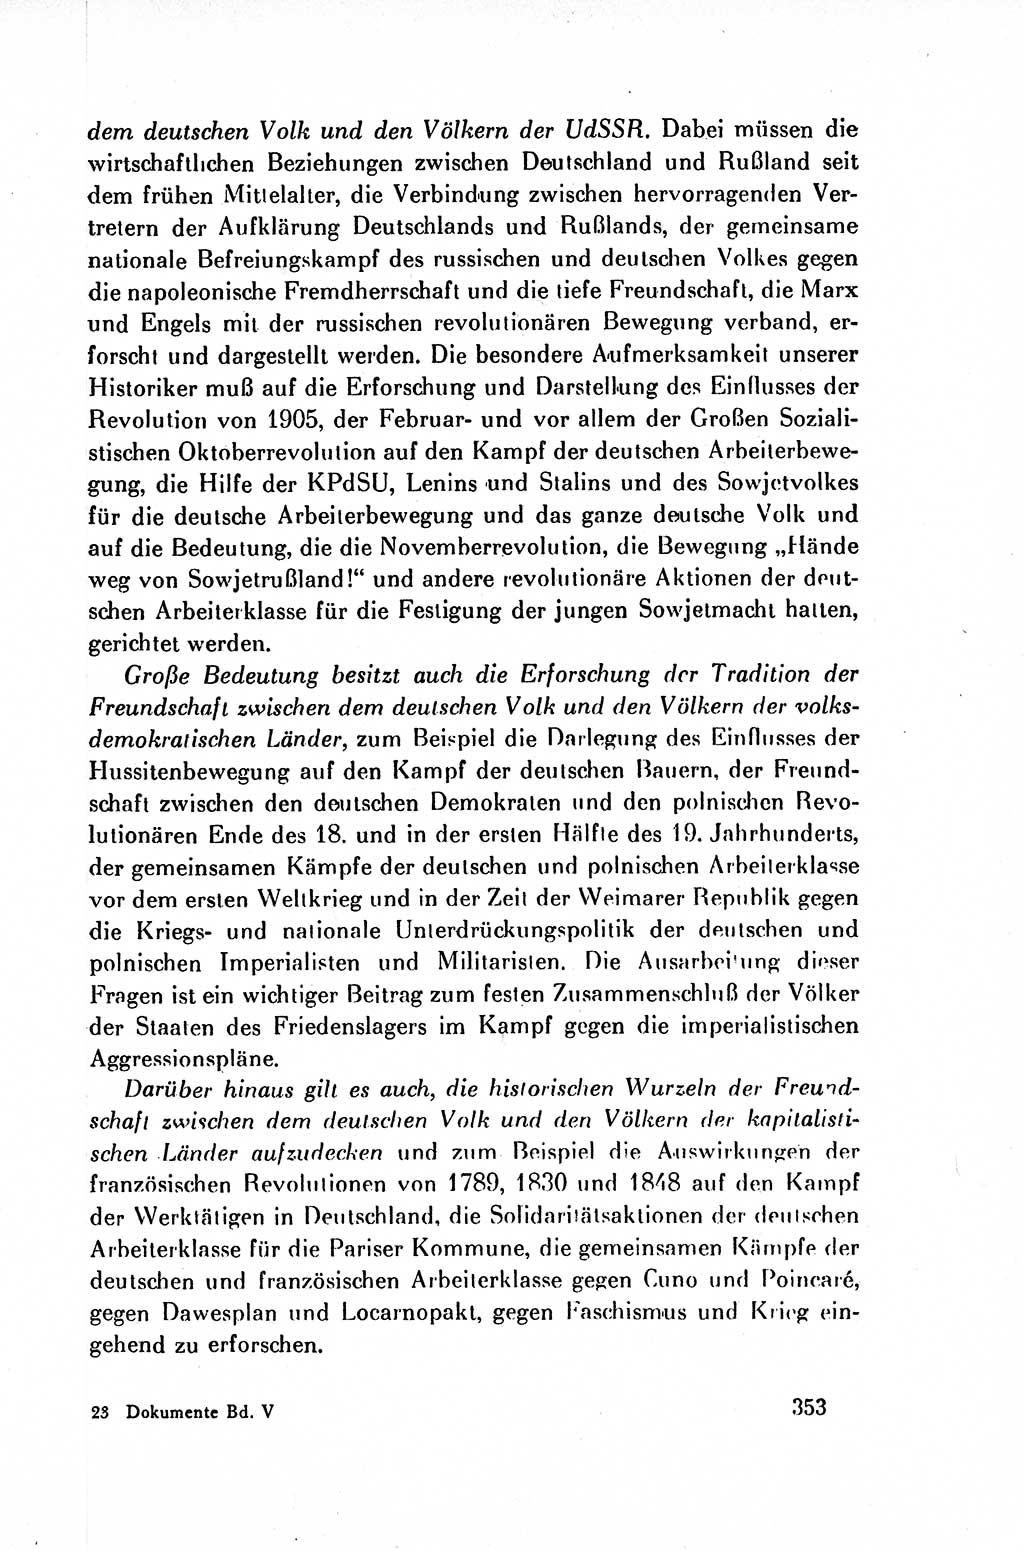 Dokumente der Sozialistischen Einheitspartei Deutschlands (SED) [Deutsche Demokratische Republik (DDR)] 1954-1955, Seite 353 (Dok. SED DDR 1954-1955, S. 353)